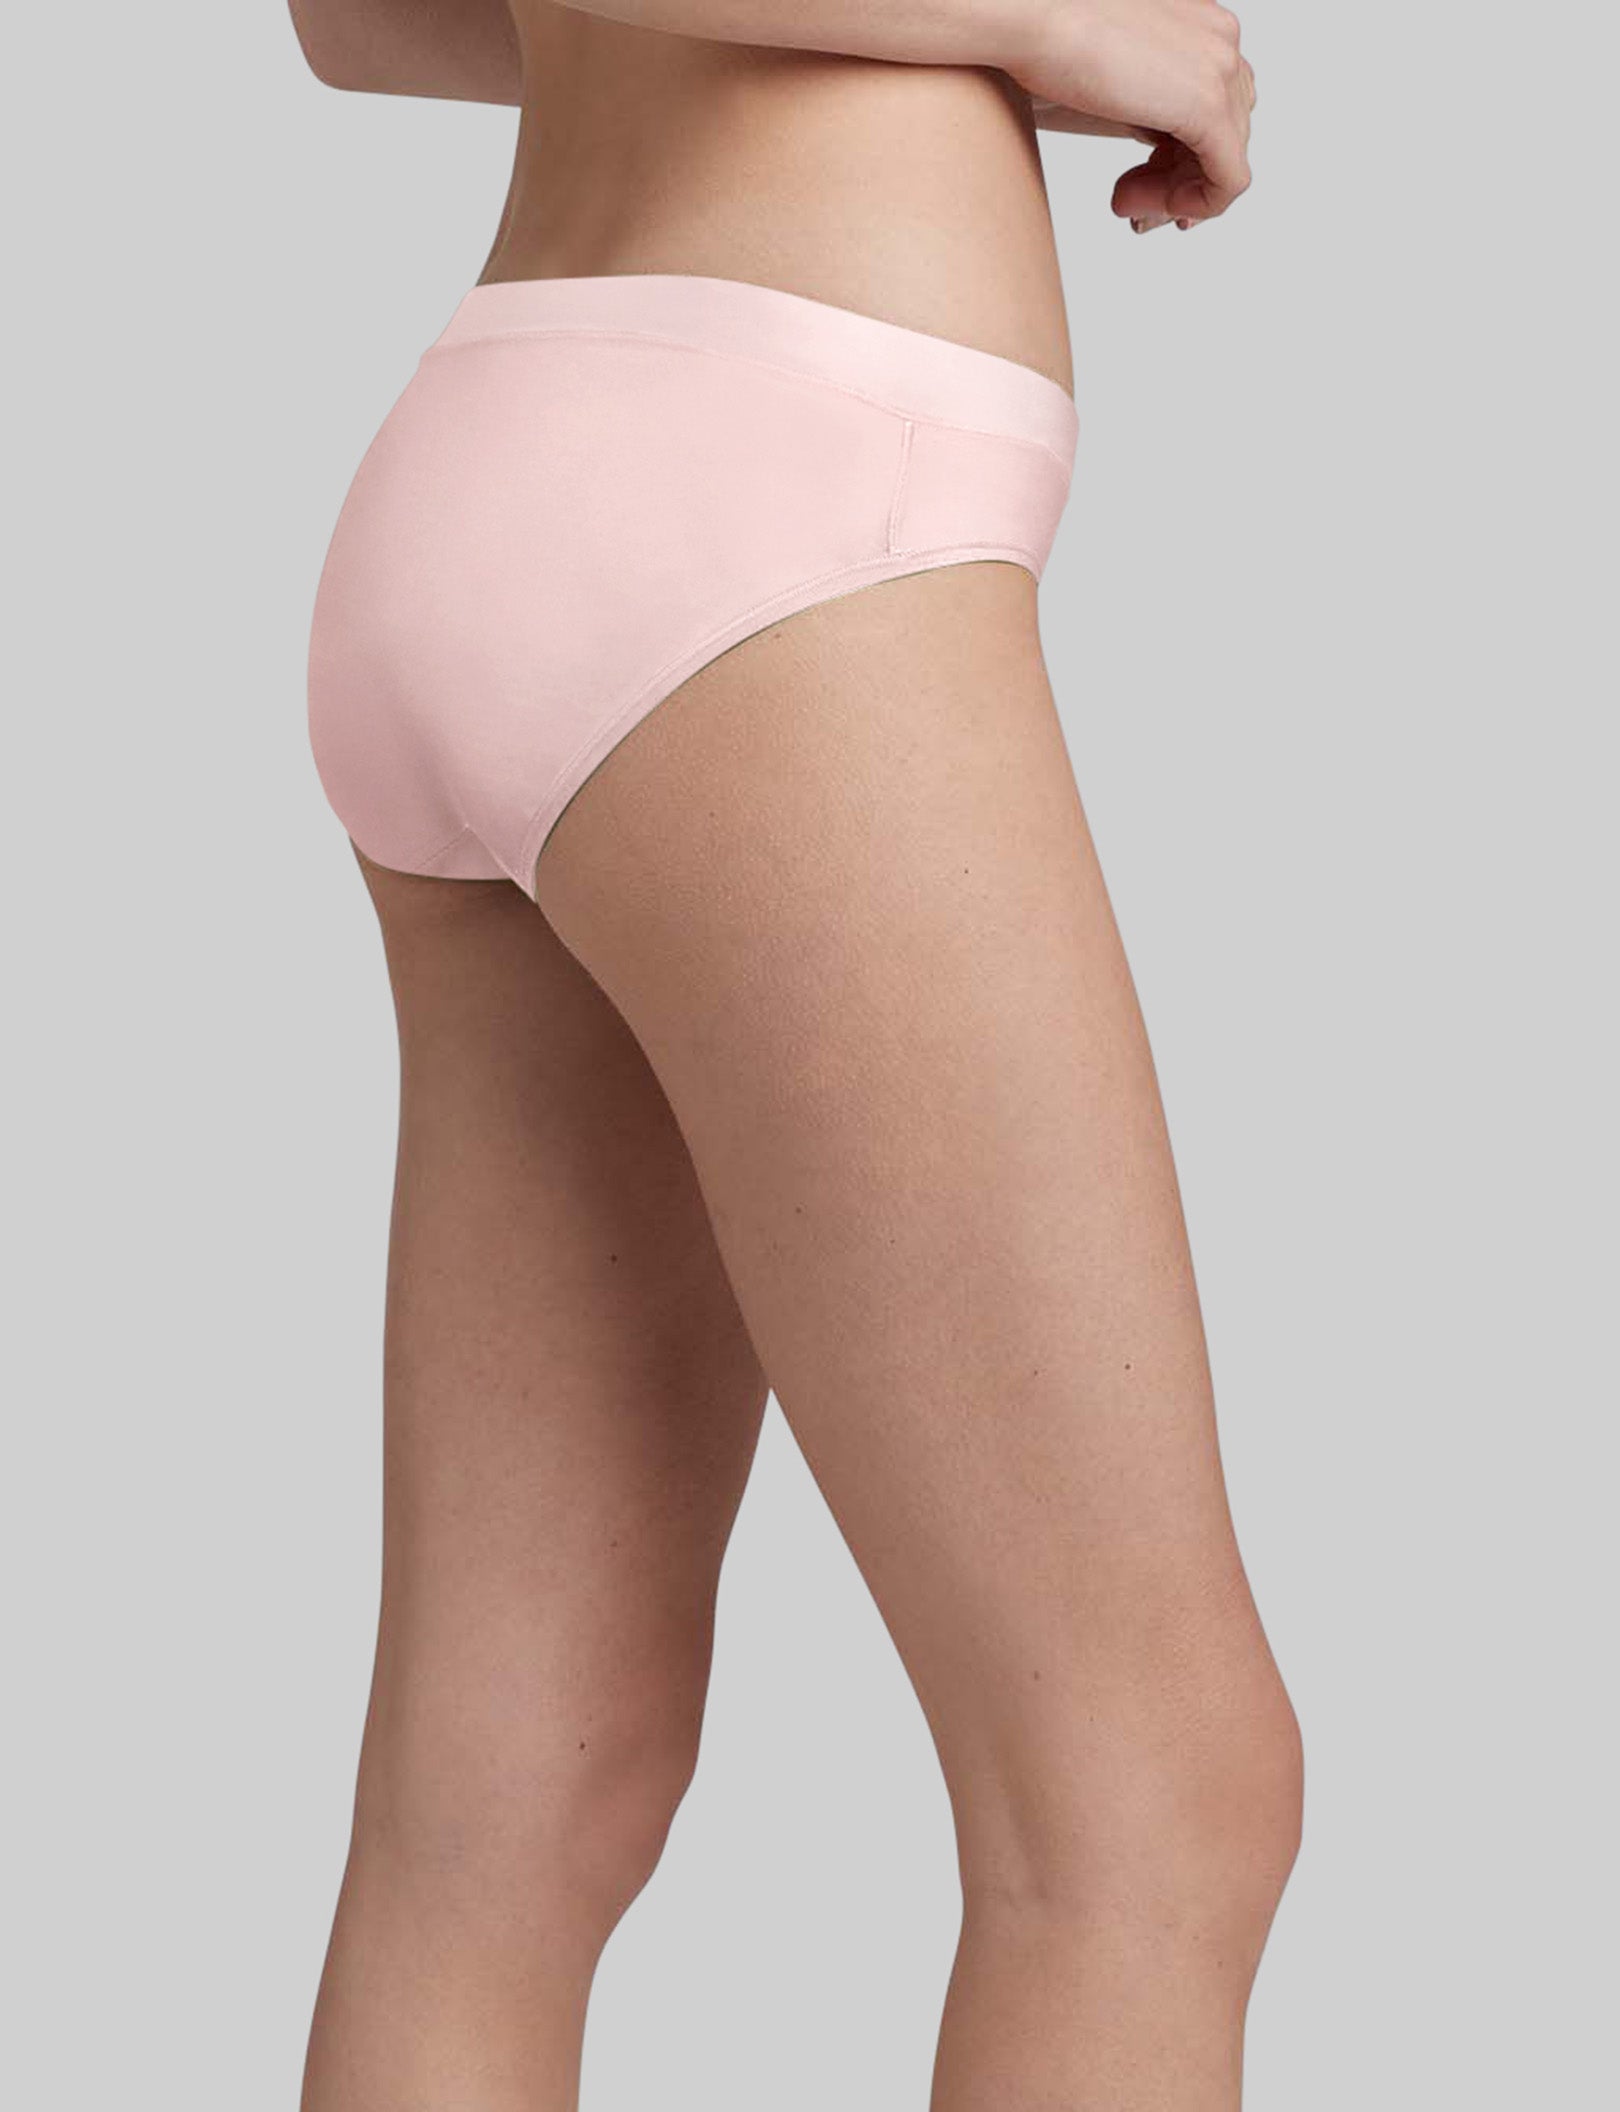 Antz Pantz Ladies 2 Pack Frenchie Briefs Underwear size 14 Colours Pink Aqua